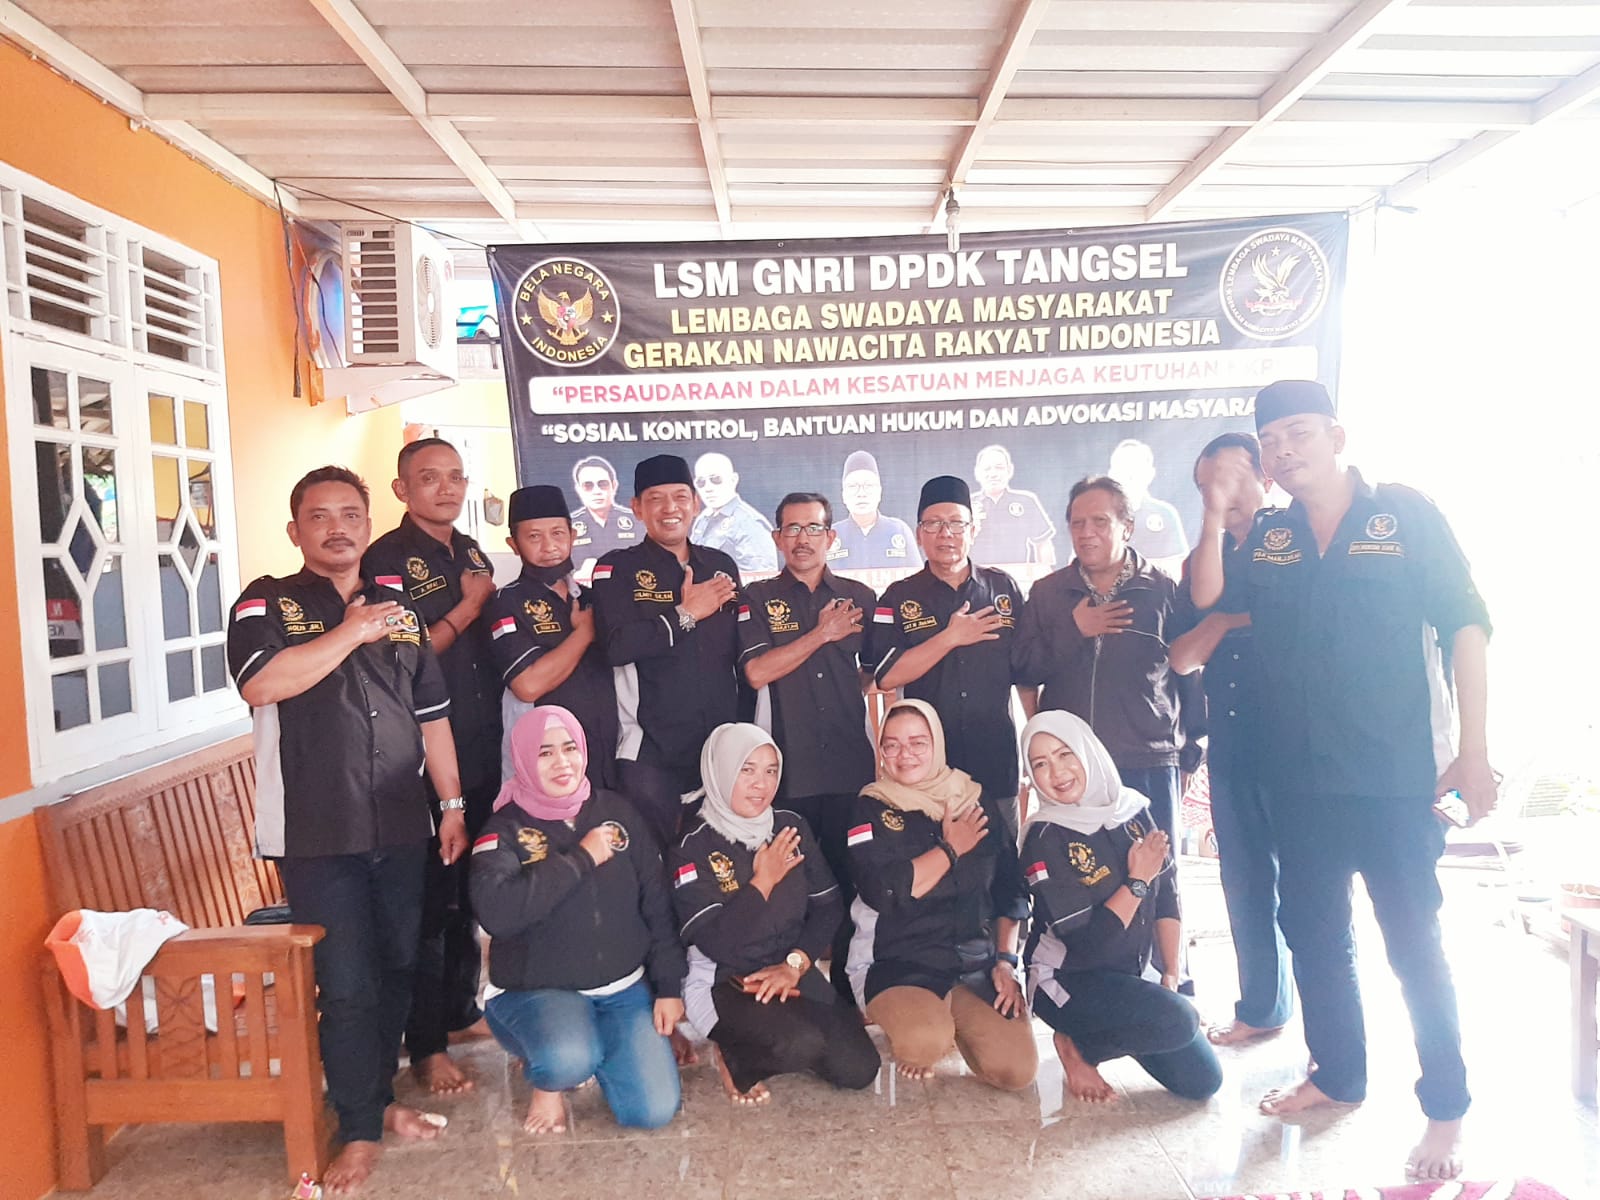 Konsolidasi dan silaturahmi LSM GNRI DPD Khusus Kota Tangerang Selatan 